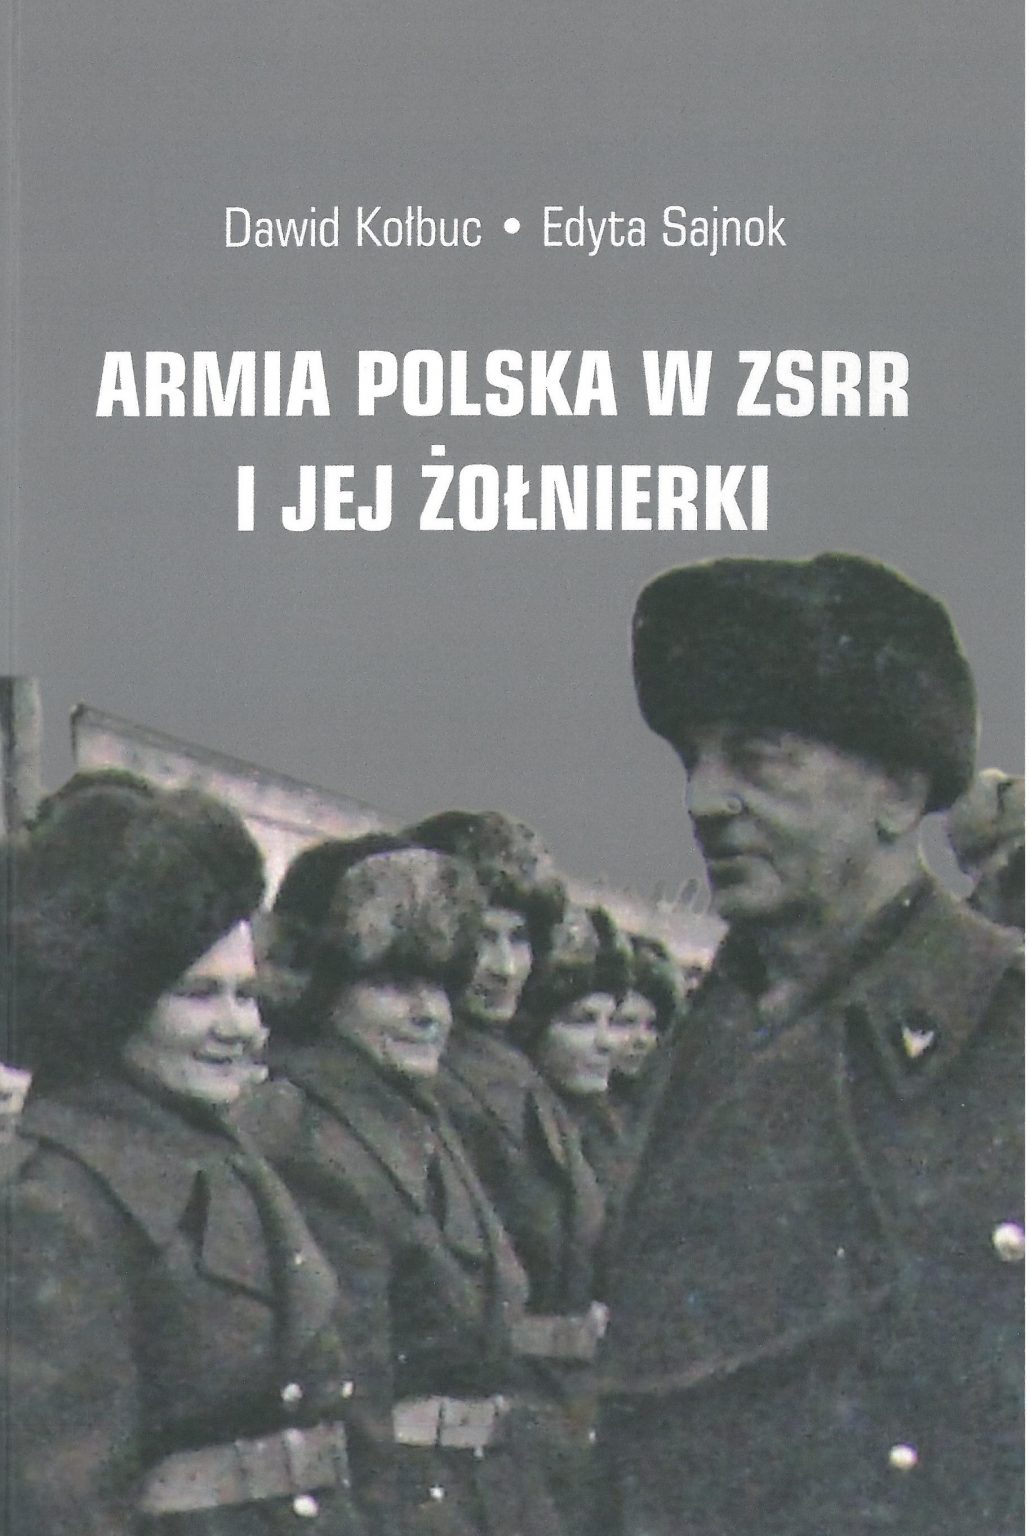 Armia Polska w ZSRR i jej żołnierki (D.Kołbuc E.Sajnok)